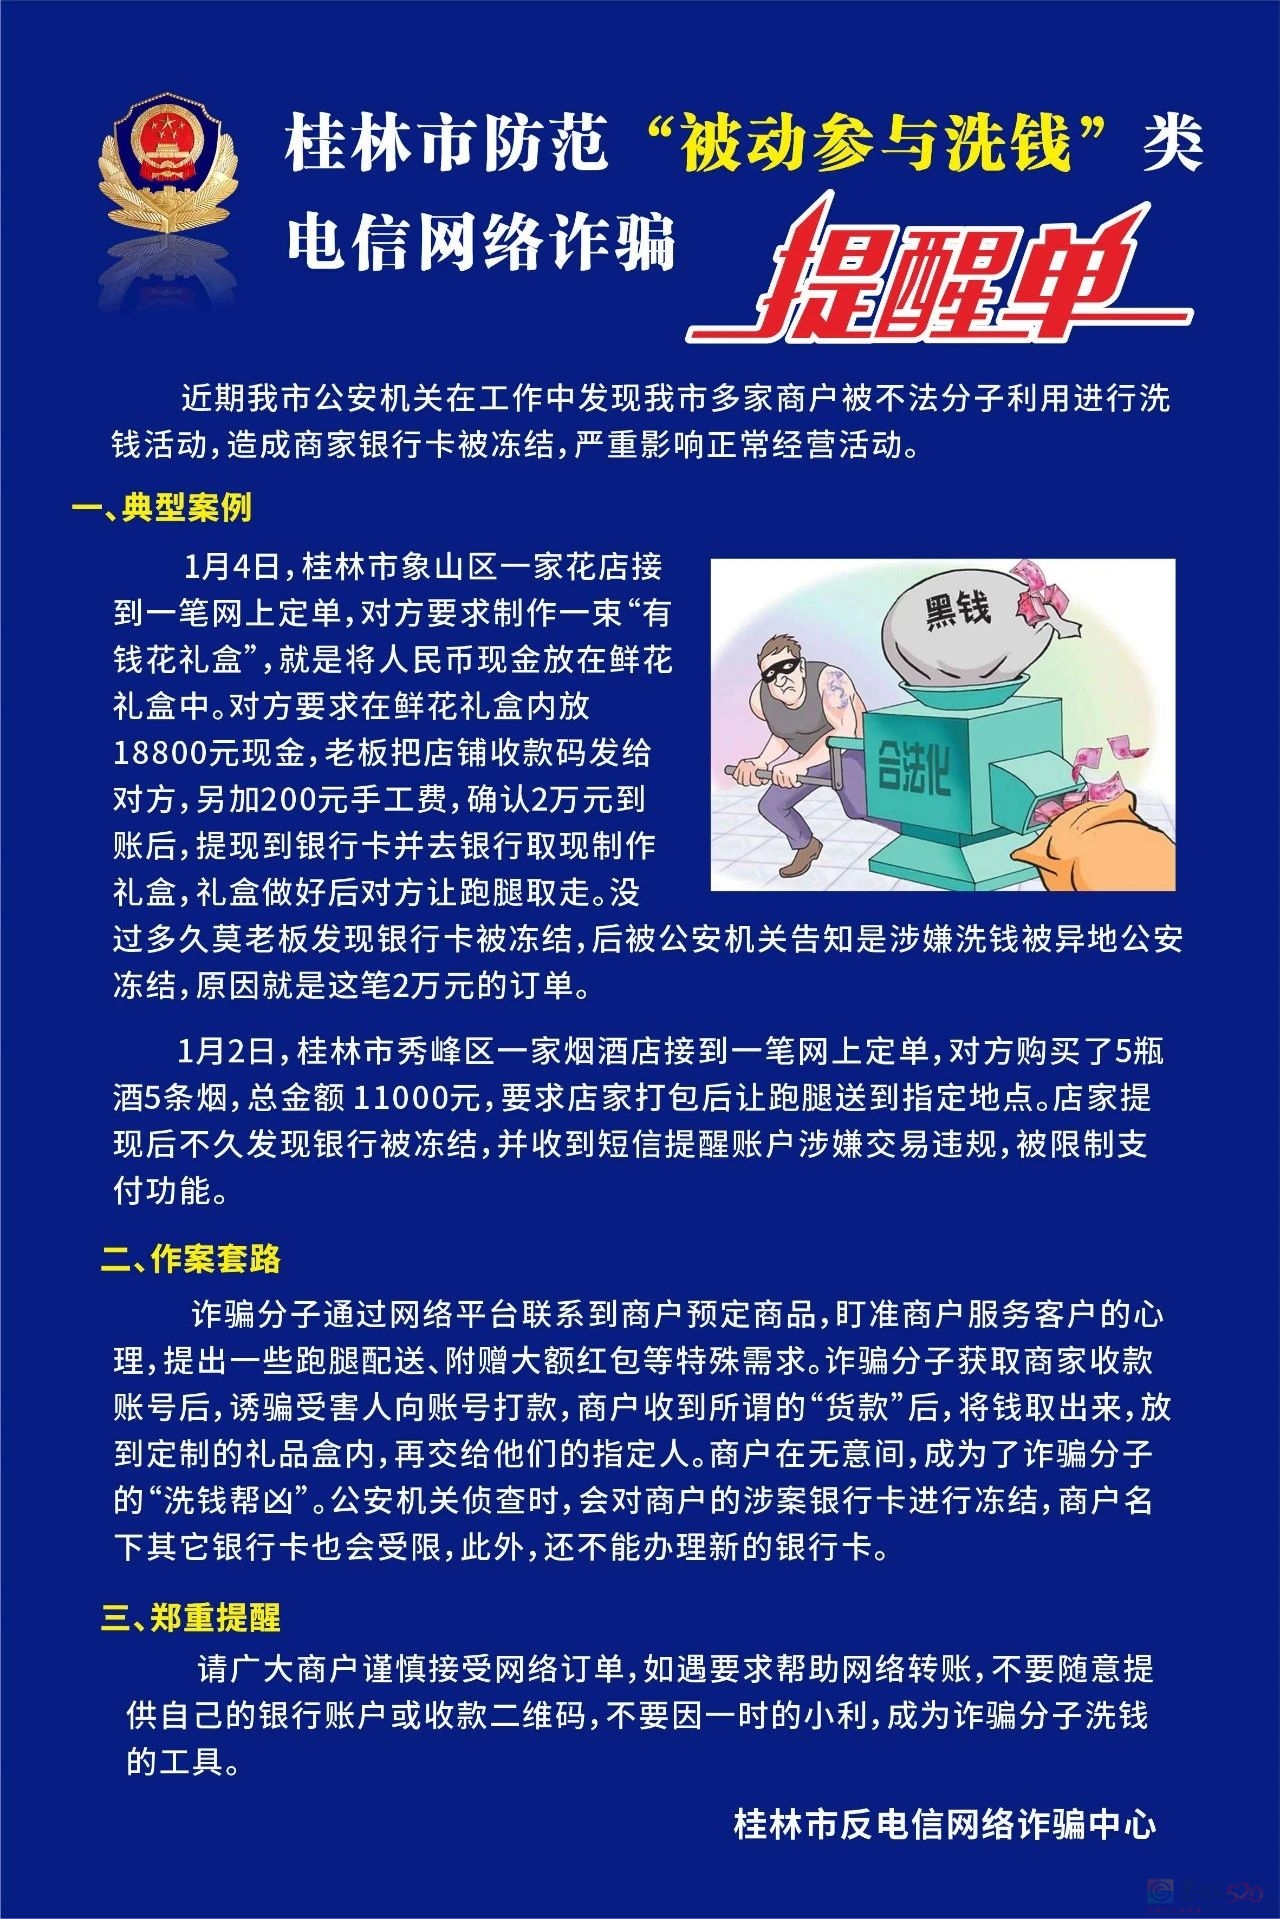 近期多人被骗！桂林警方紧急提醒824 / 作者:尹以为荣 / 帖子ID:313232